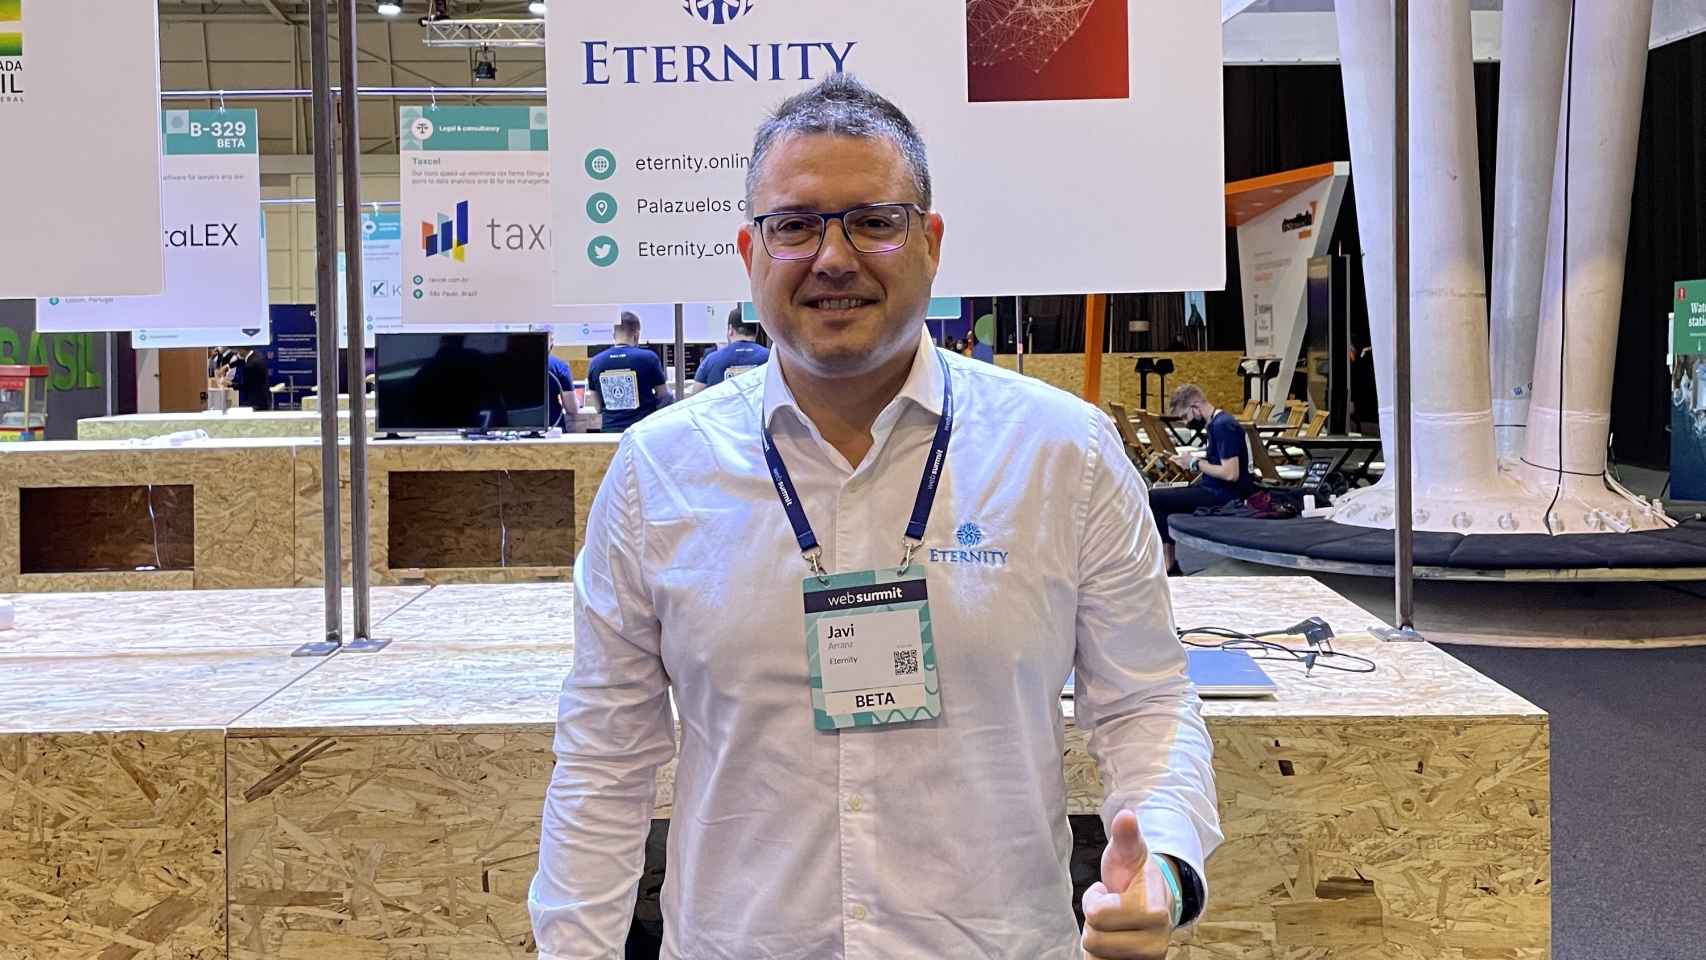 El CEO de la startup Eternity Javier Arranz en una imagen de archivo.